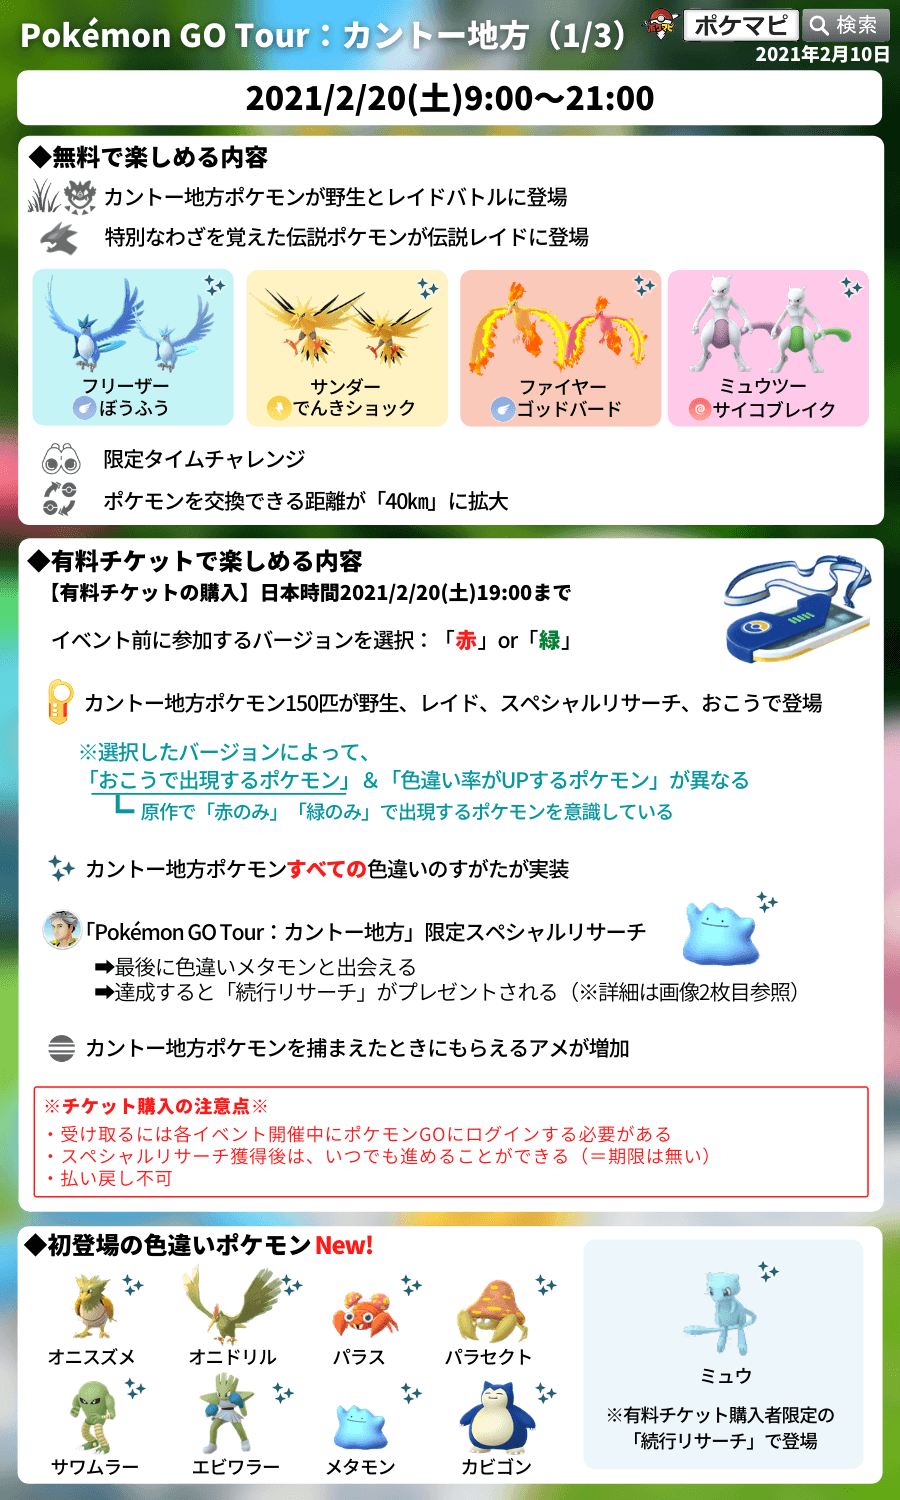 ポケモンgo Pokemon Go Tour カントー地方開催 色違いミュウを含む151匹全ての色違いポケモンが登場